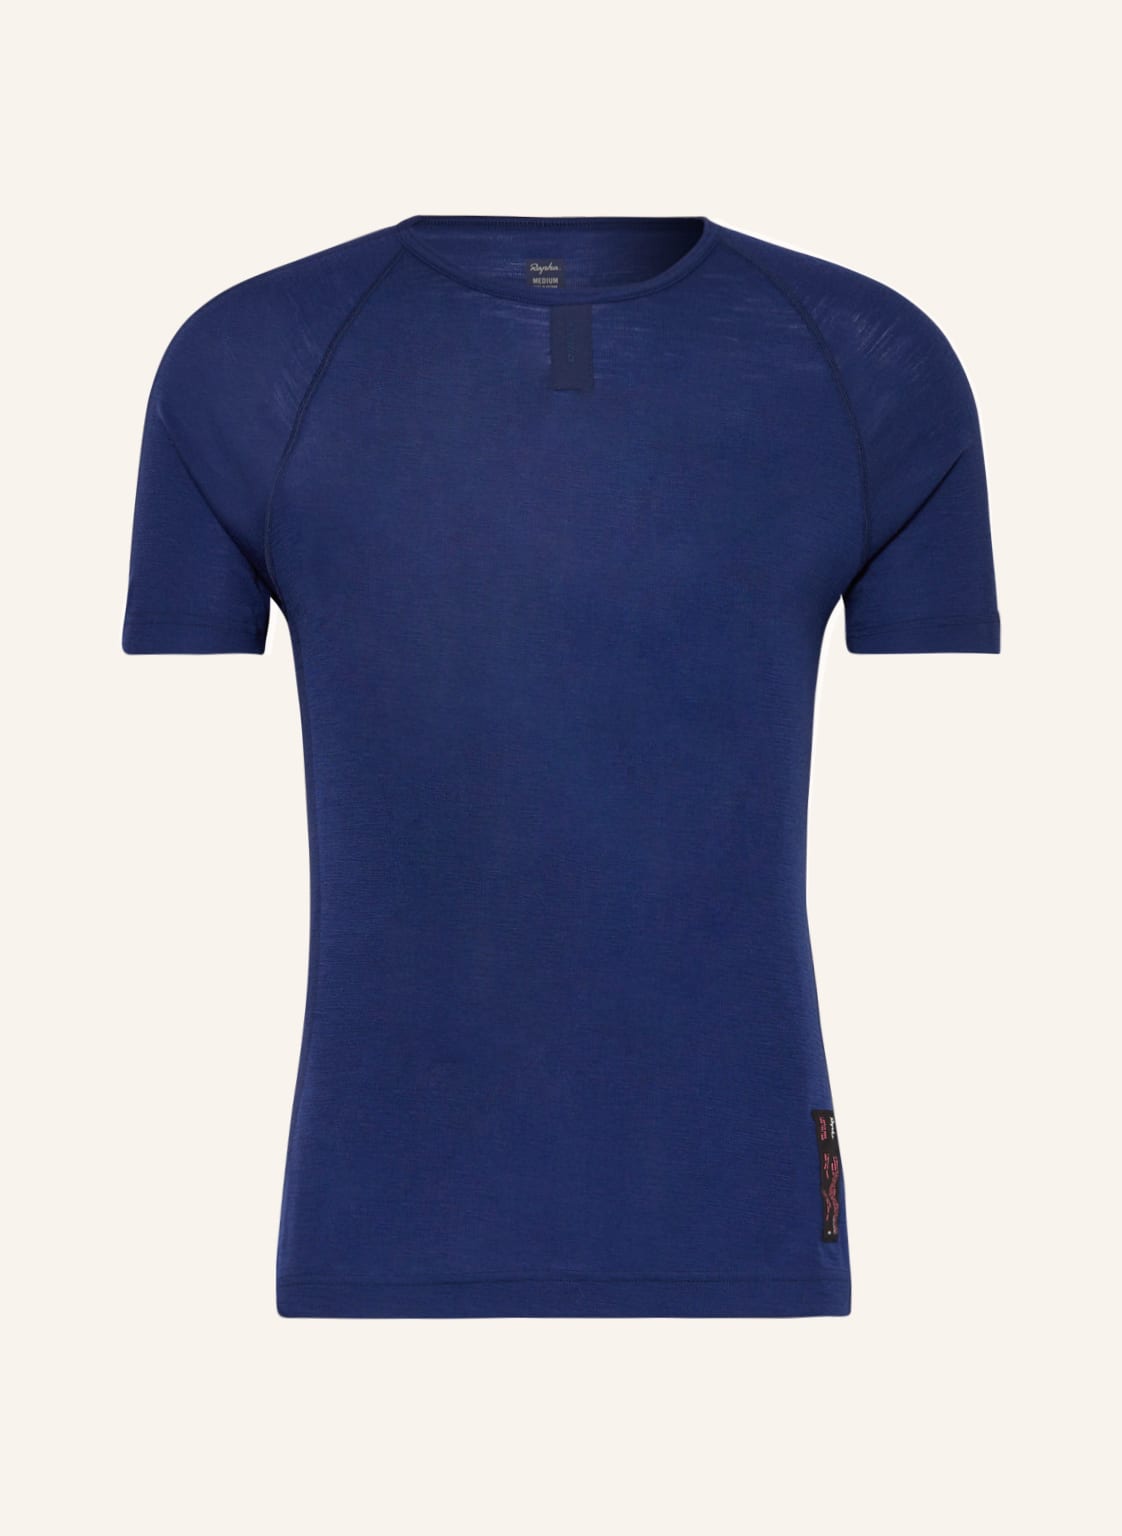 Image of Rapha Funktionswäsche-Shirt Aus Merinowolle blau